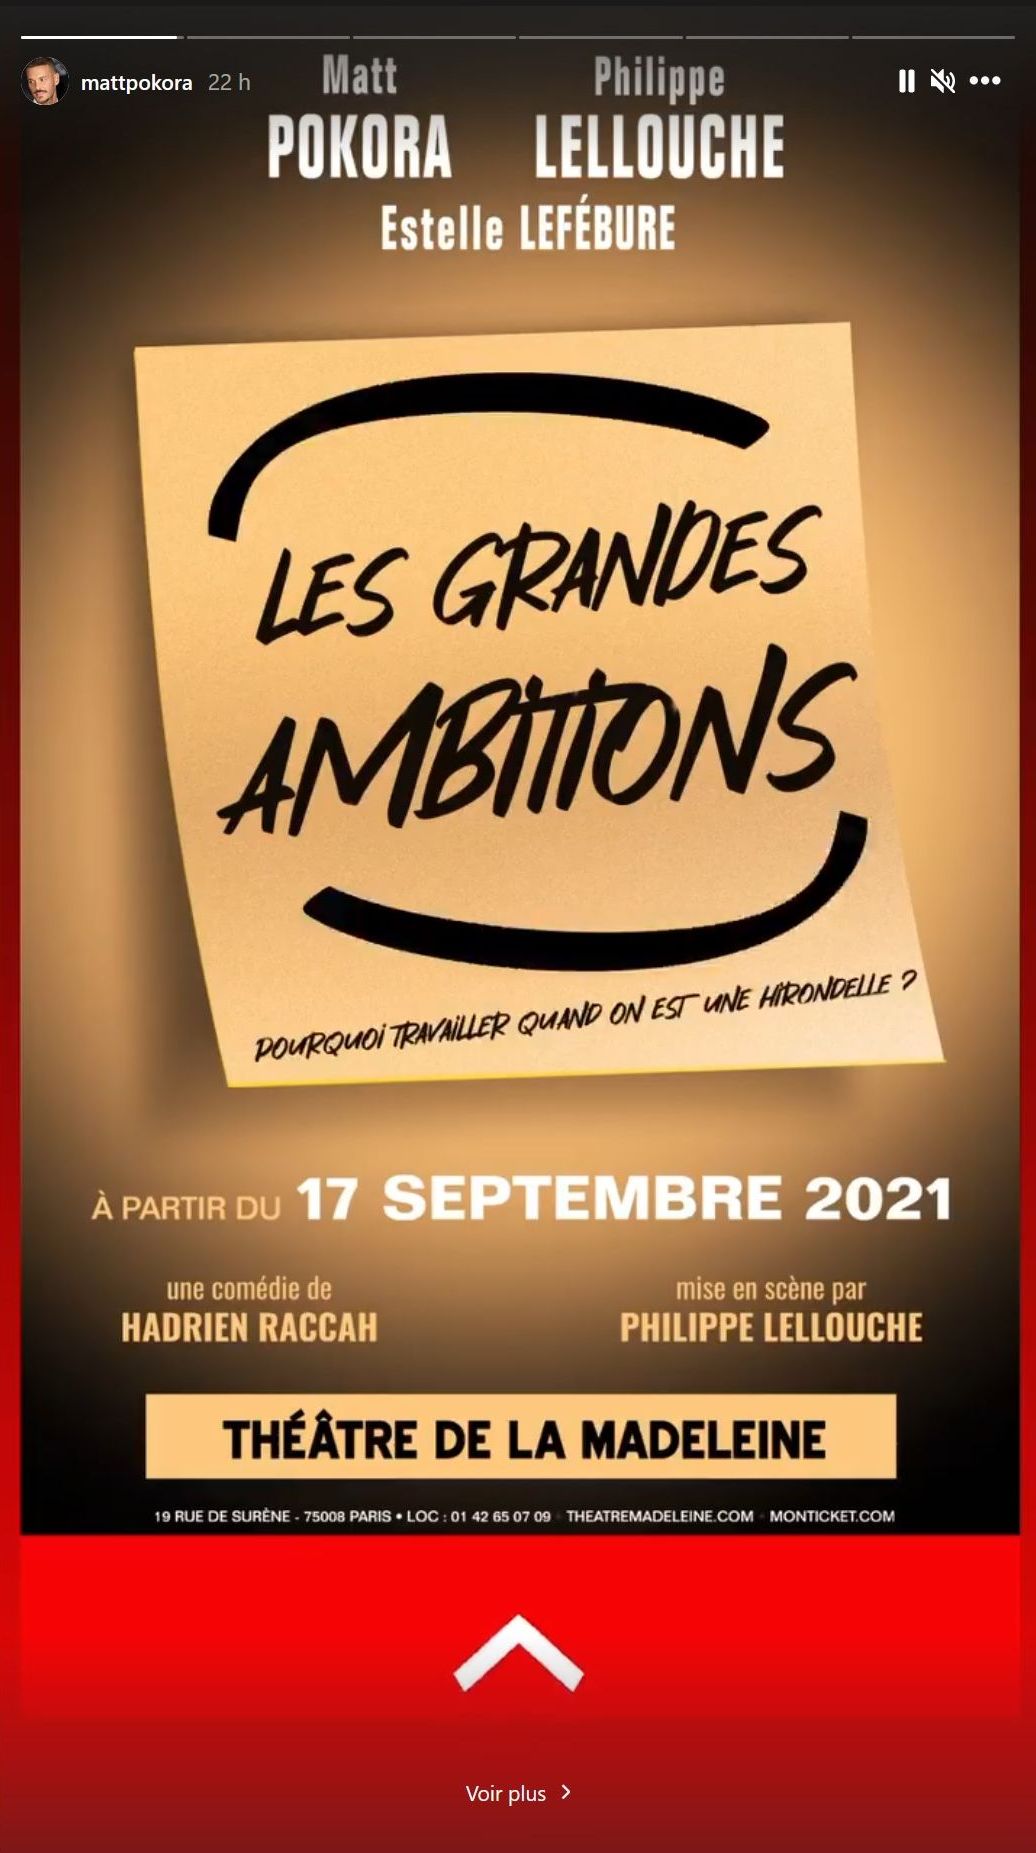  Estelle Lefébure et Matt Pokora à l'affiche des "Grandes Ambitions" @Instagram